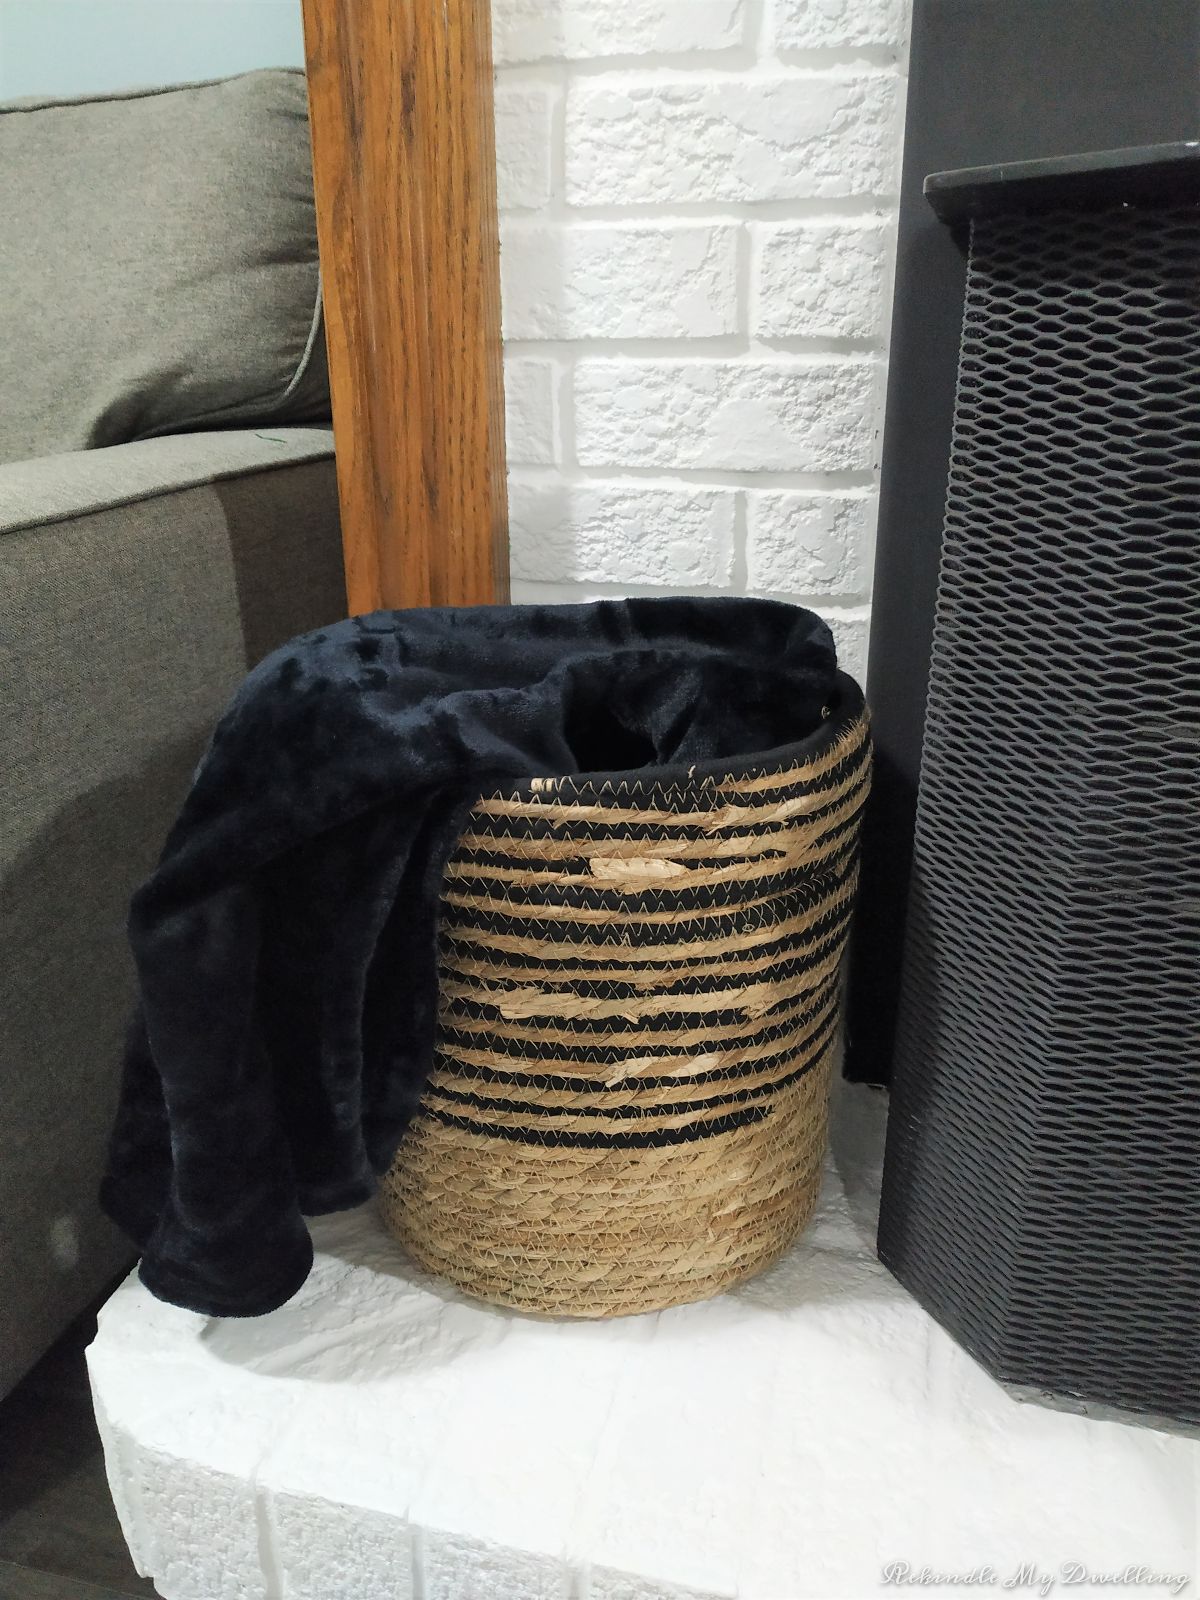 Black blanket inside a basket.